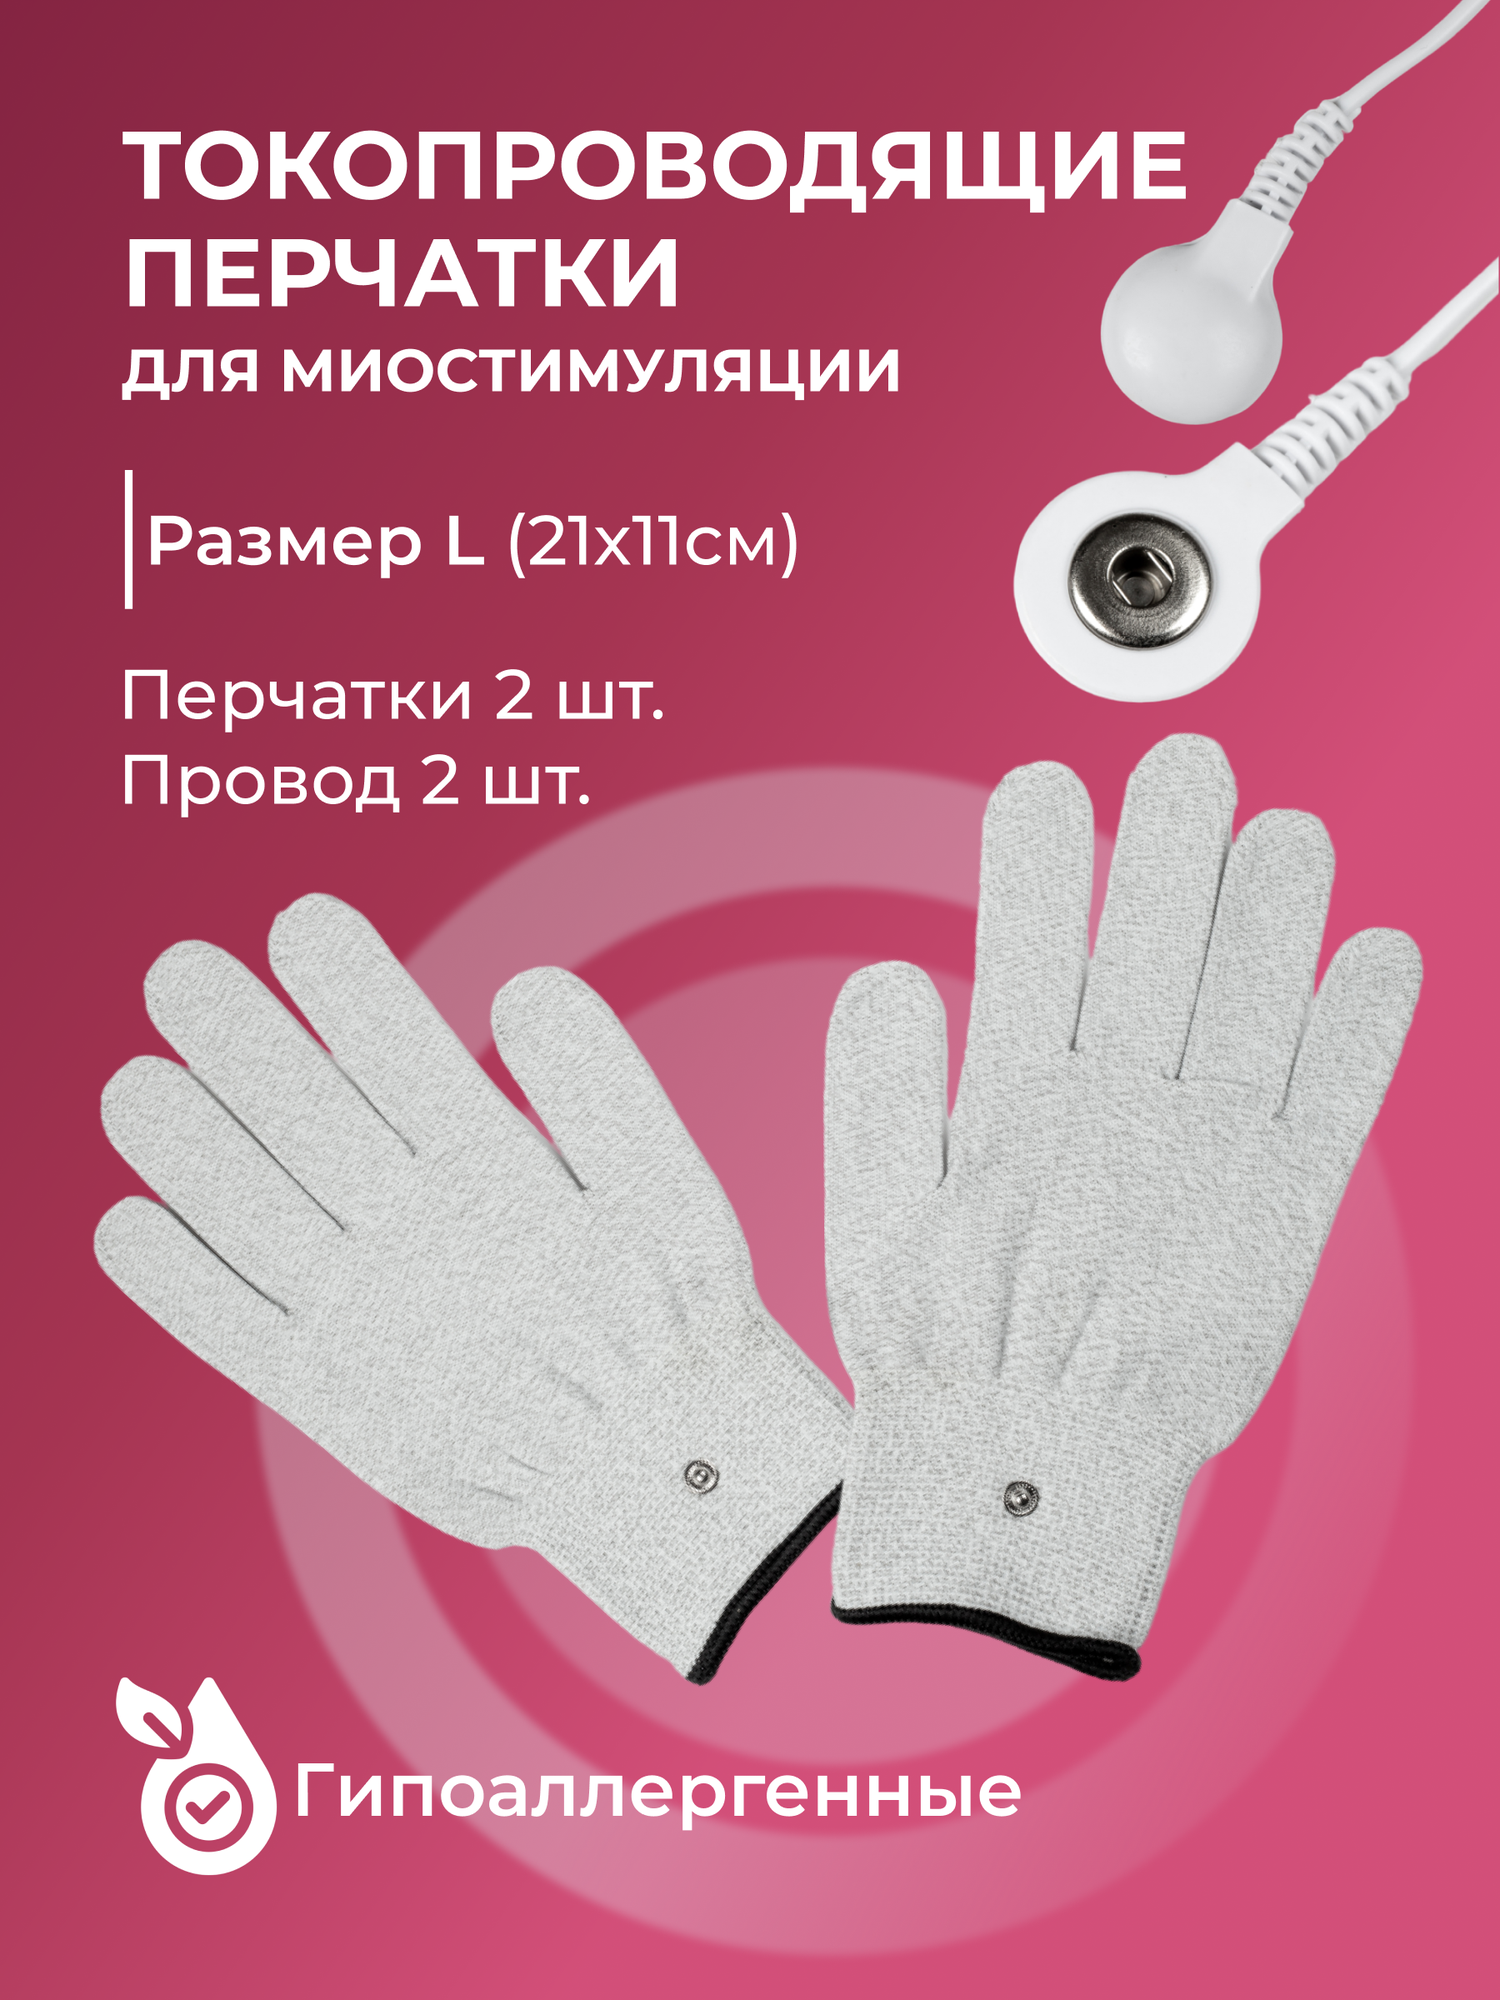 Токопроводящие перчатки для миостимуляции, Миостимулятор